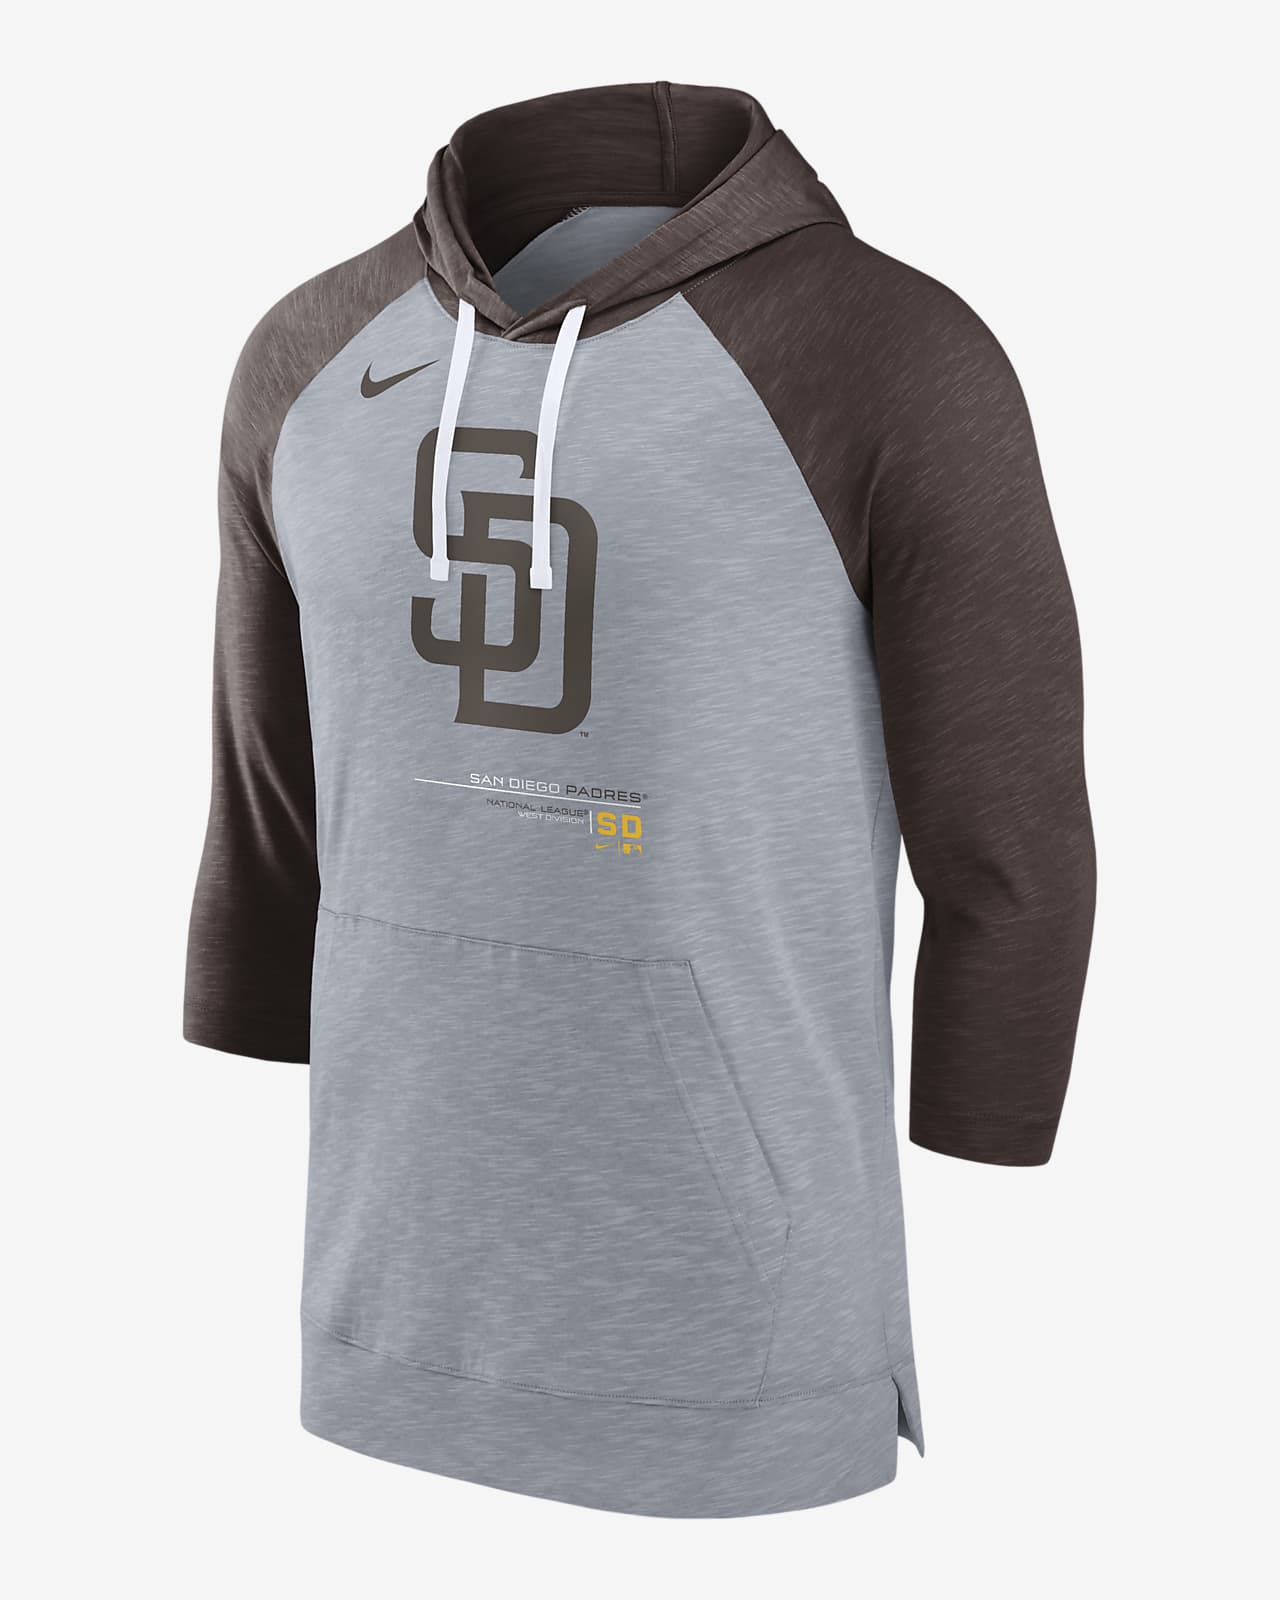 Nike Baseball (MLB San Diego Padres) Men's 3/4-Sleeve Pullover Hoodie